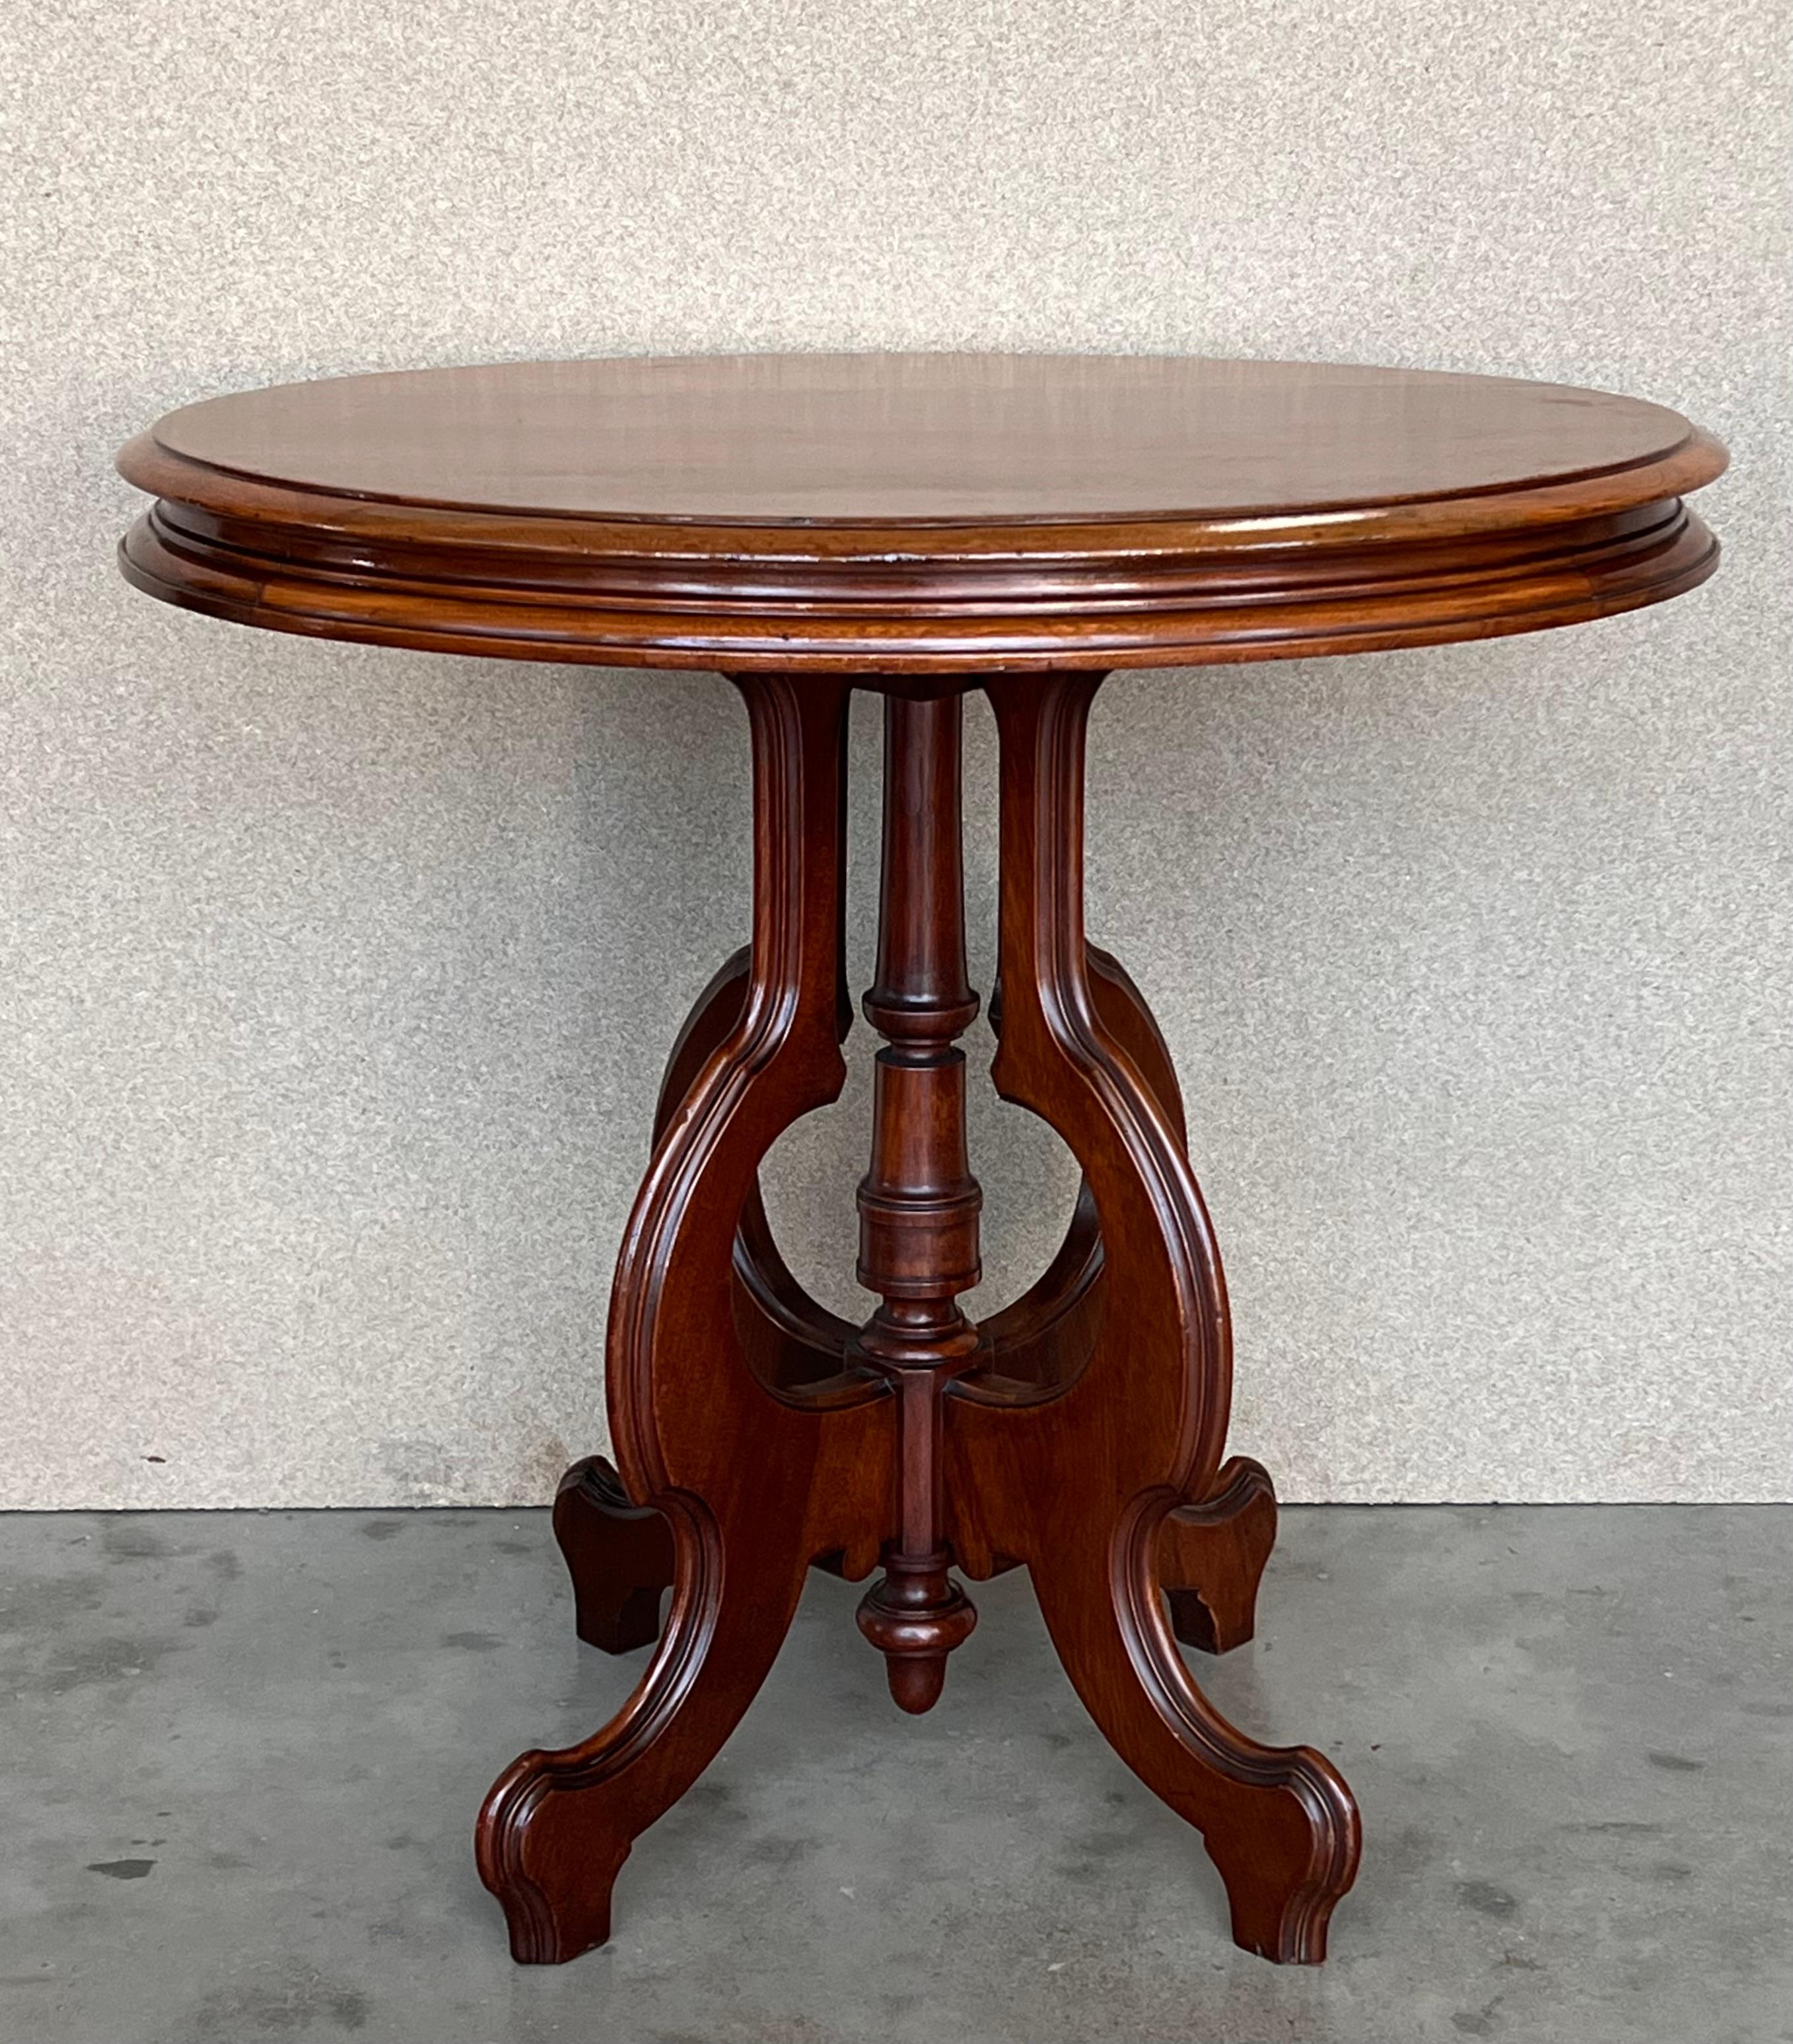 Il s'agit d'une table basse ovale de bonne qualité en ronce de noyer de l'époque victorienne, avec un plateau nivelé, sur une base en forme de cage à oiseaux, reposant sur d'élégants pieds centraux courbés sur un piédestal. La table est en très bon